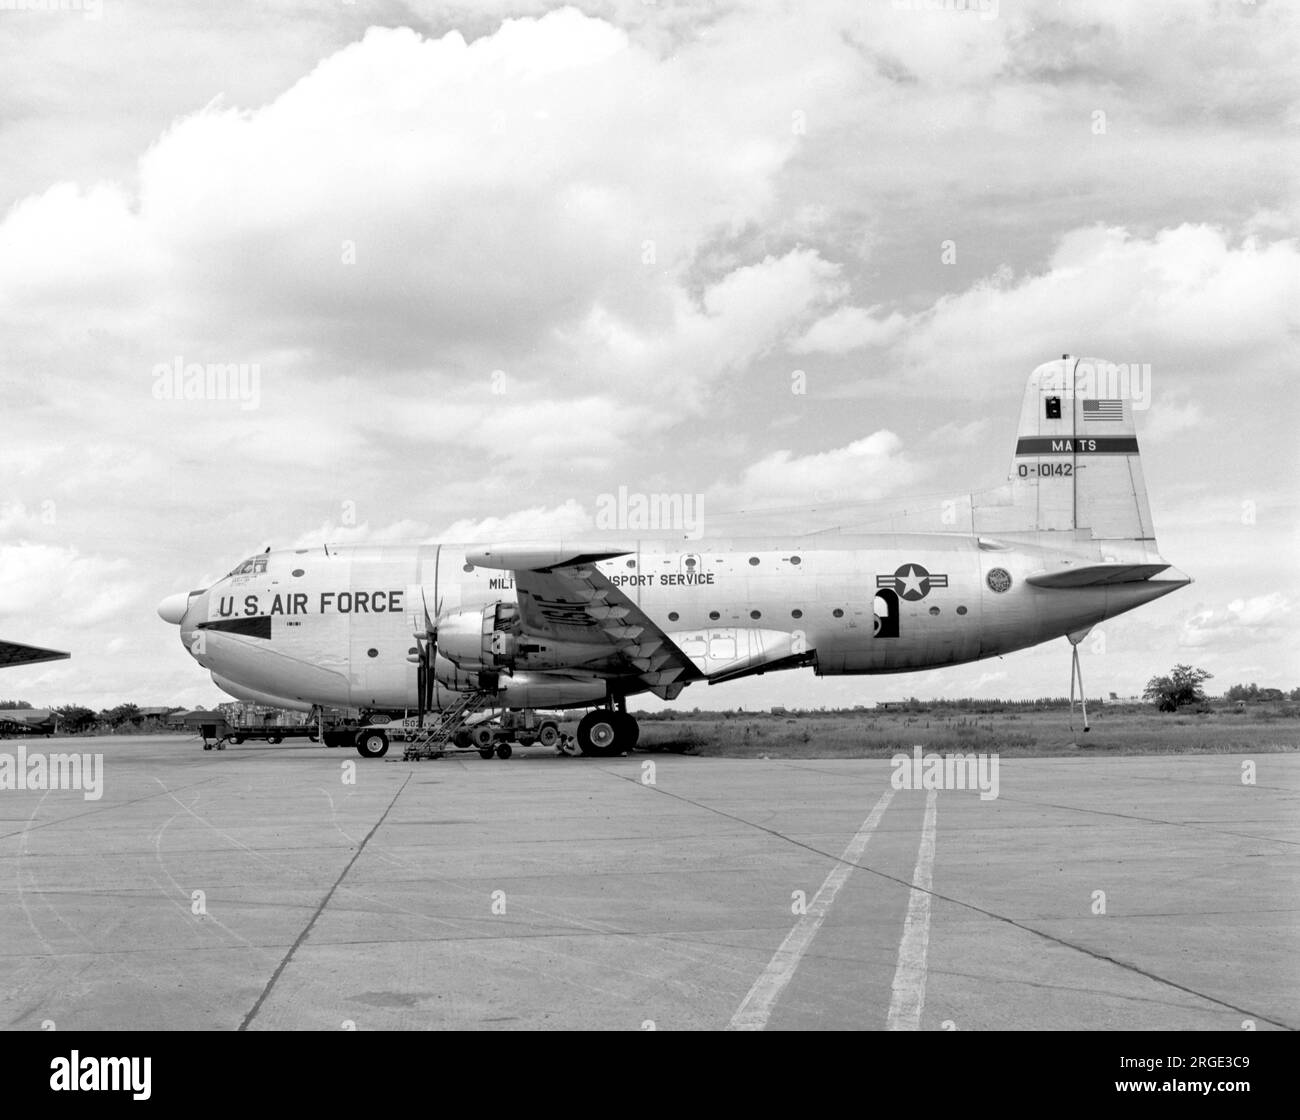 United States Air Force â€“ Douglas C-124C-DL Globemaster II 51-0142 (msn 43476), de la 1502 Air transport Wing à Don Muang Royal Thai Air Force base en août 1965. (Marqué comme O-10142 â€“ O=Obsolète, souvent utilisé pour les avions plus anciens dans l'inventaire de l'USAF dans les années 50 et 60) Banque D'Images